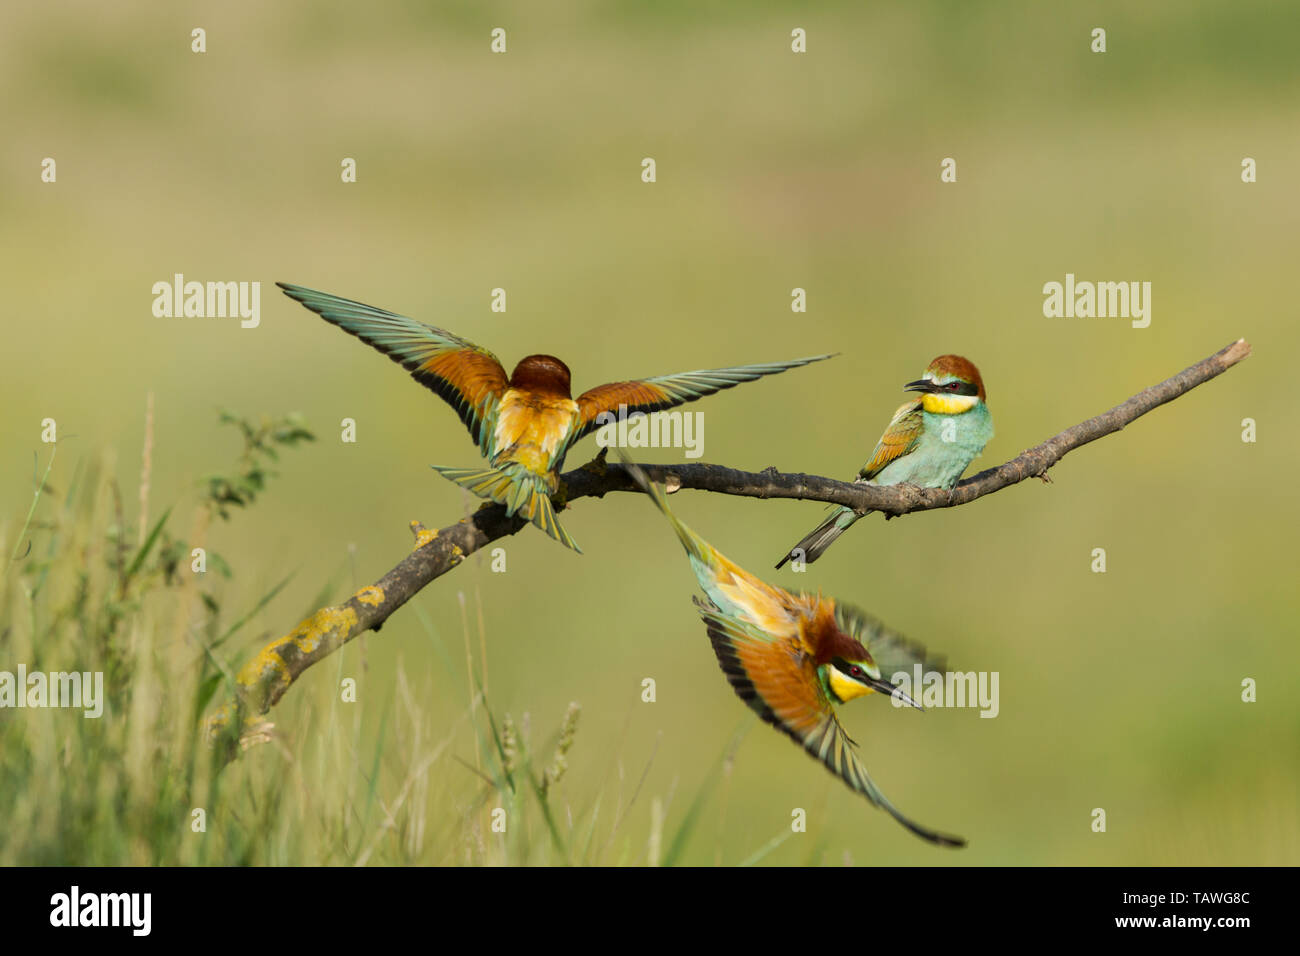 Europäische Bienenfresser, lateinischen Namen Merops apiaster, einen männlichen Vogel jagt ein interloper zeigen Interesse an seinem Mate, grün hinterlegt Stockfoto